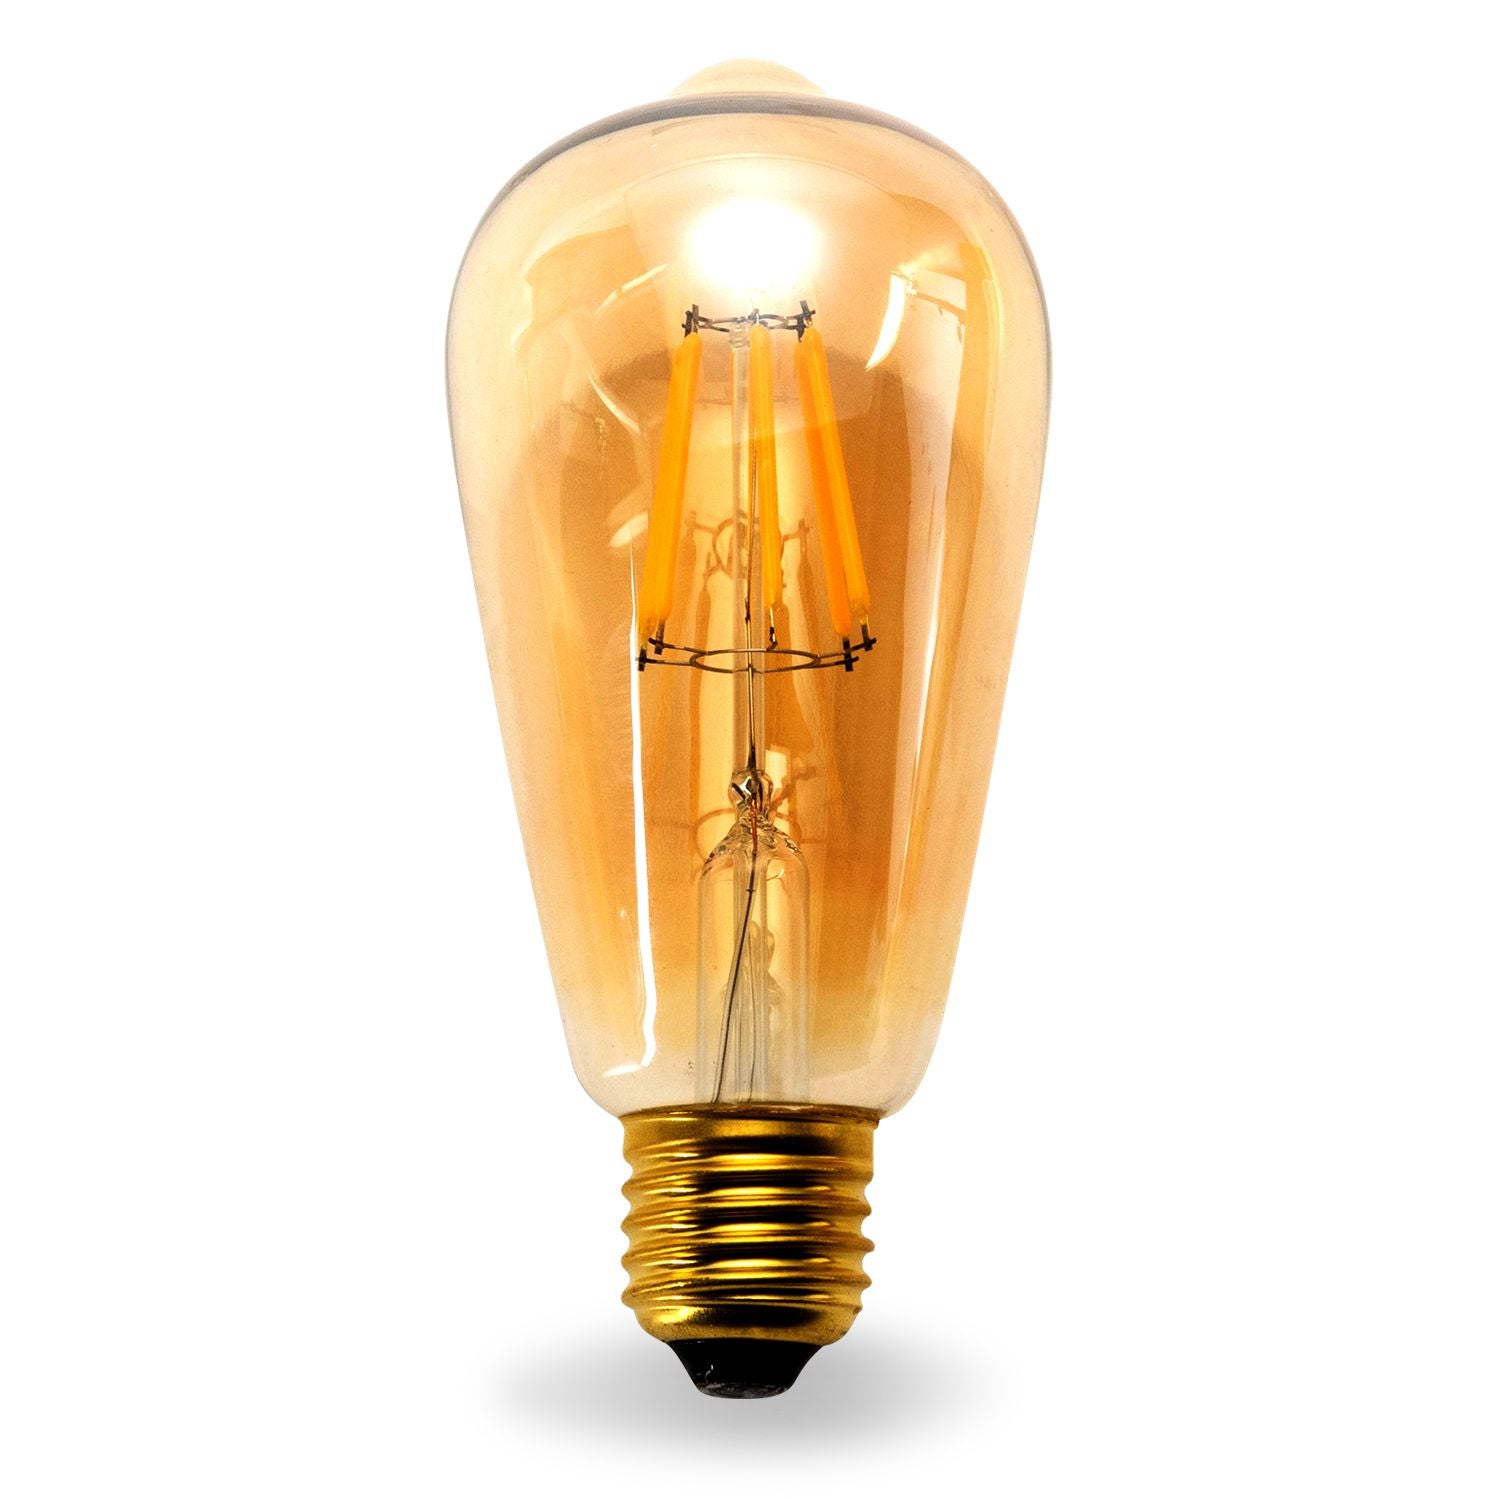 Power A Edison E26 Base 5V 6V Light Bulb Directly From Any USB Port -  12VMonster Lighting